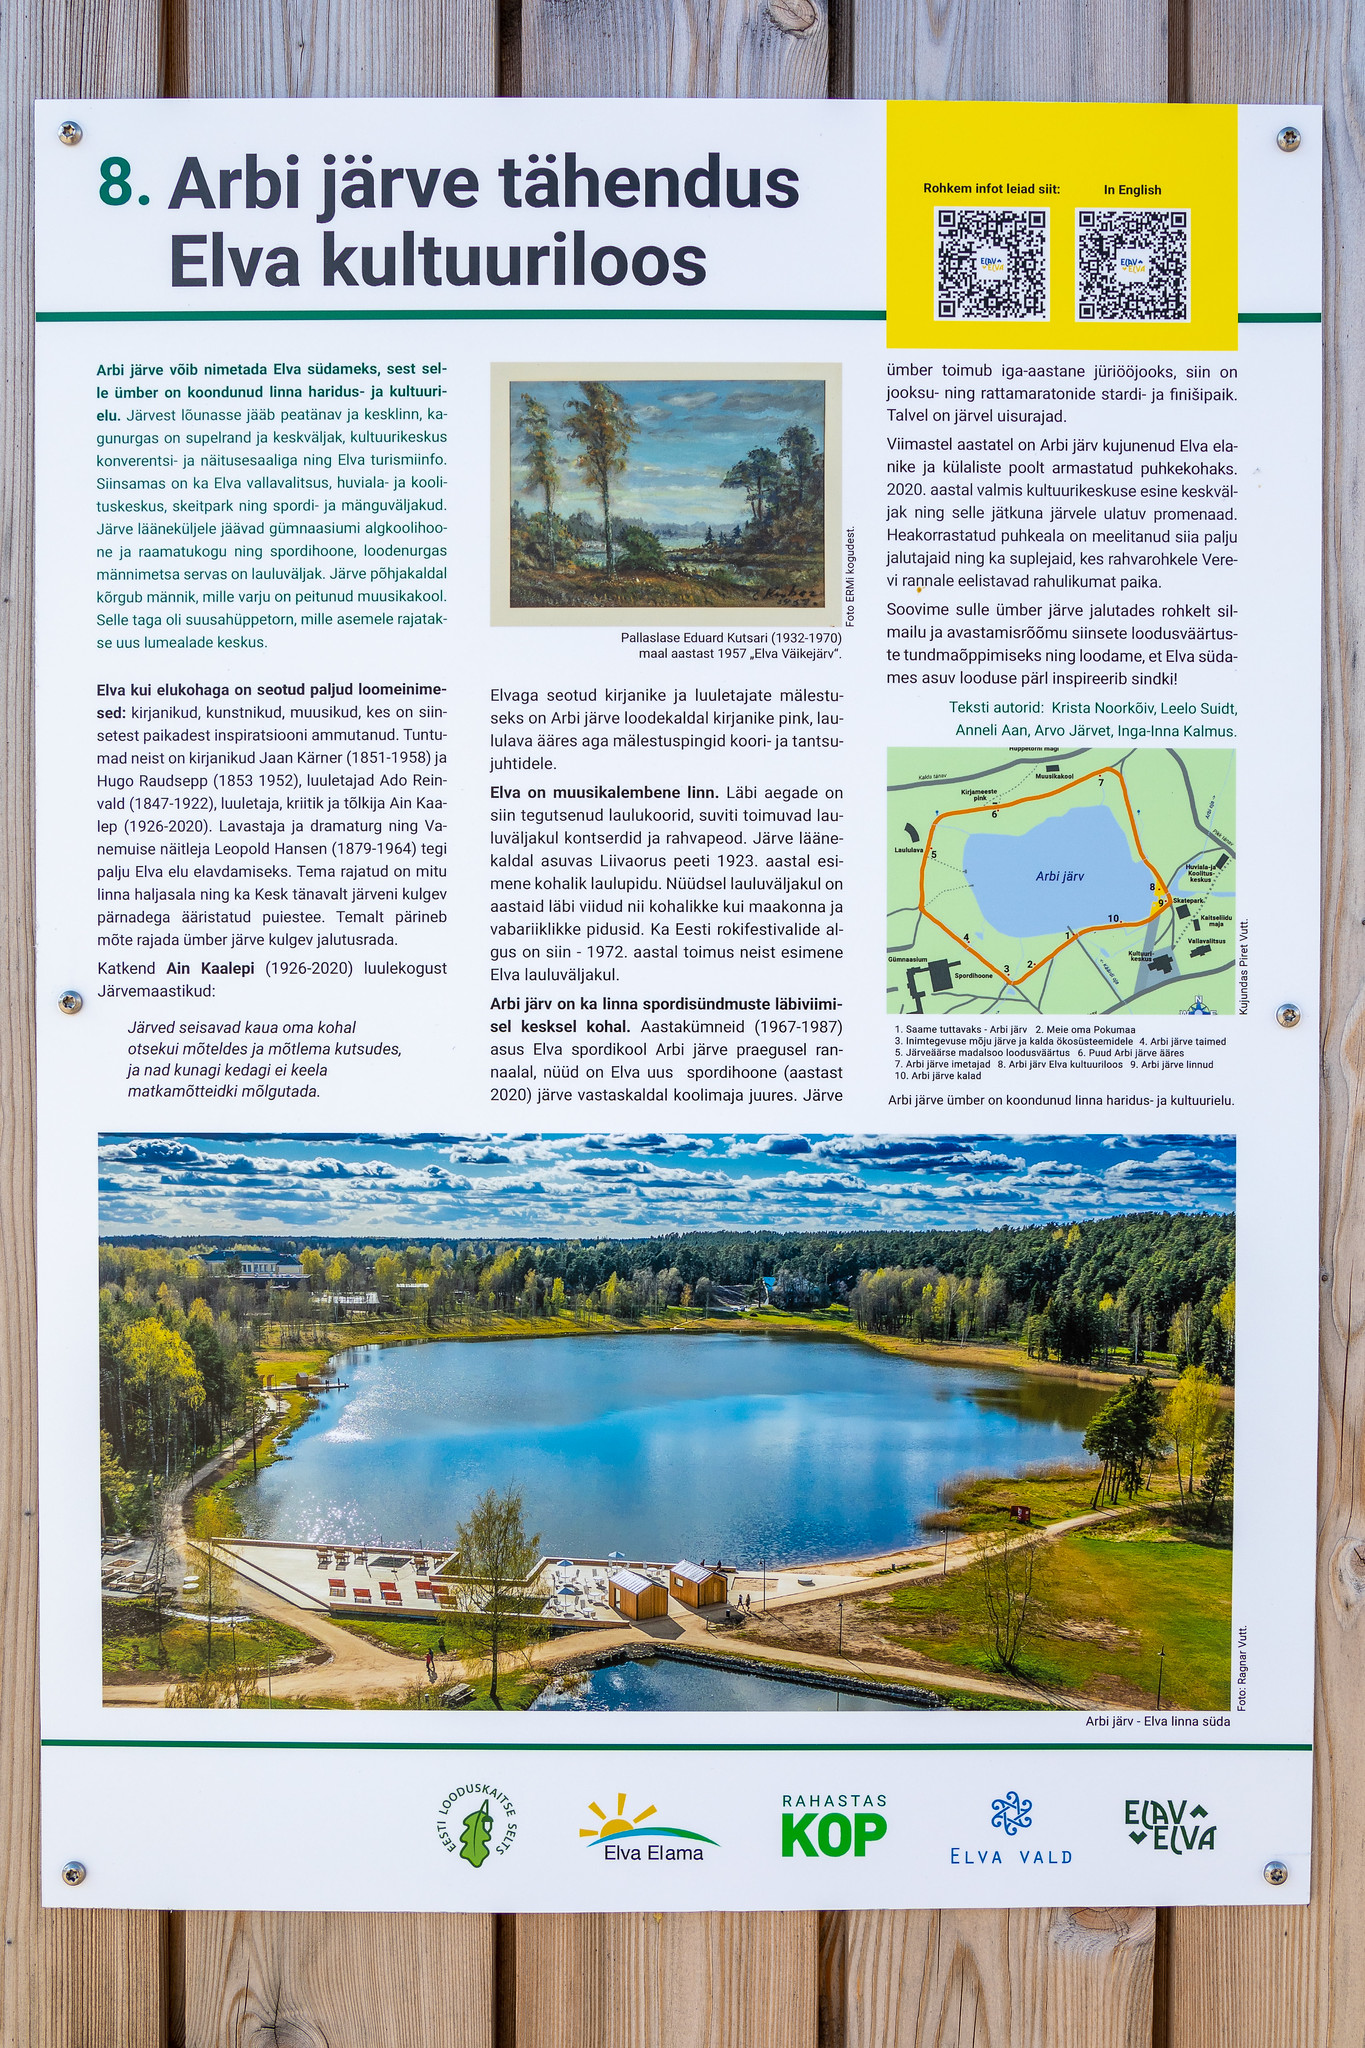 Arbin järven merkitys Elvan kulttuurihistoriassa - tieto opastetaululla